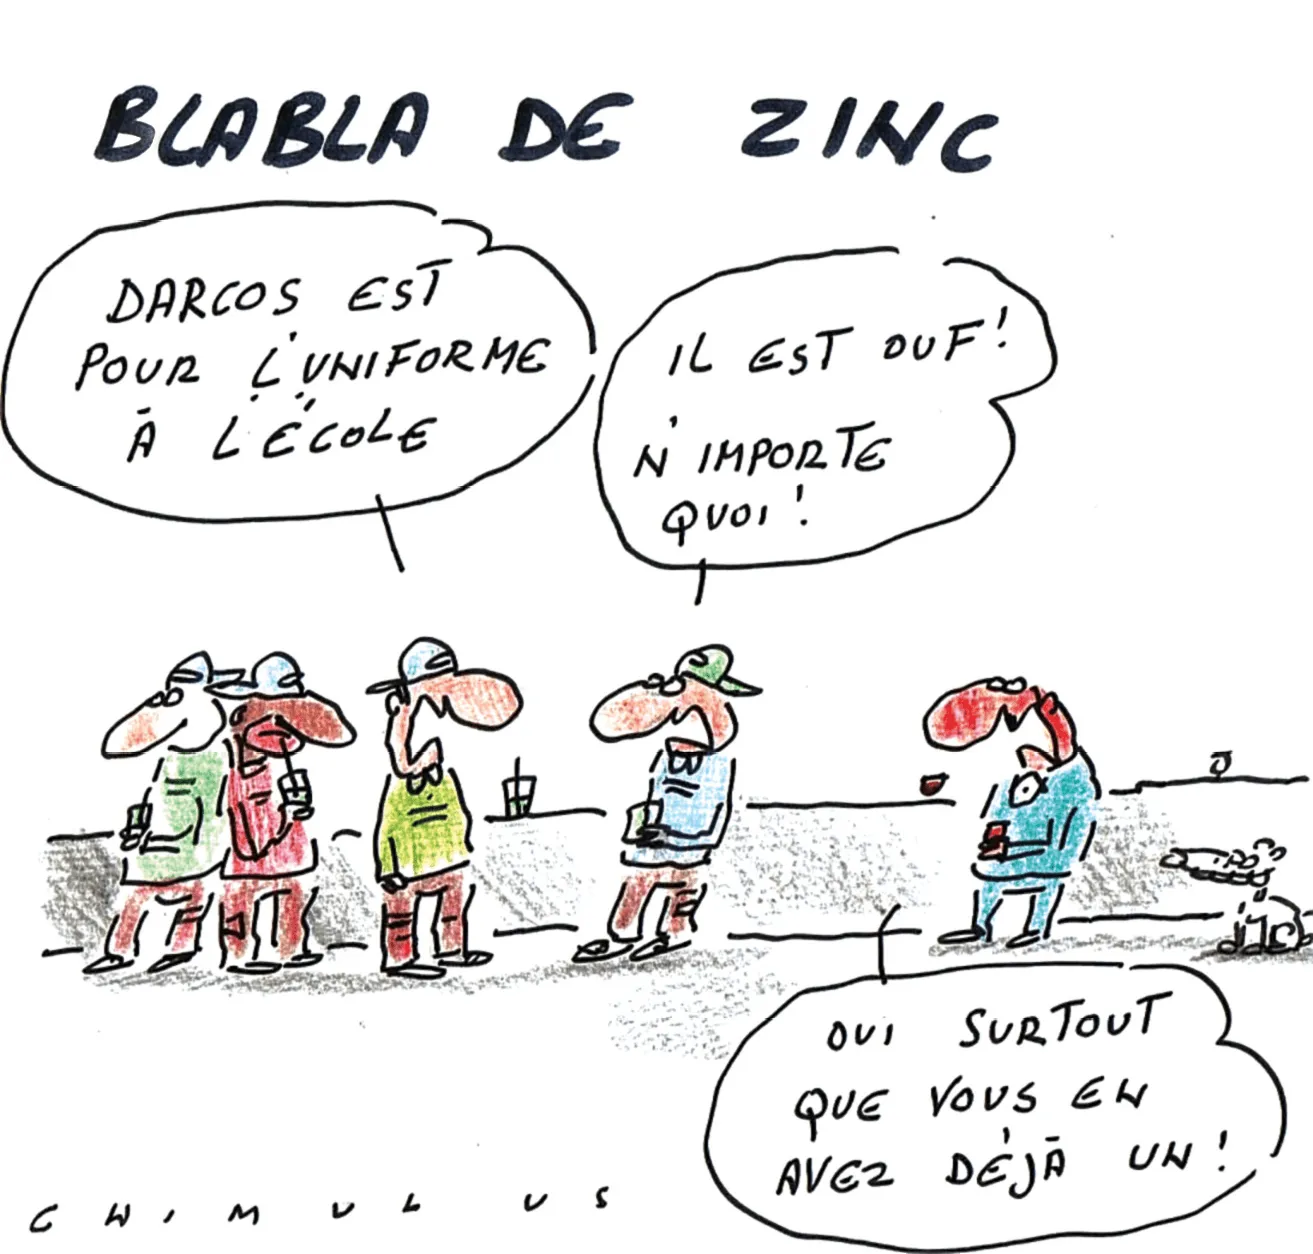 Blabla de zinc, dessin paru dans Le Nouvel Observateur, Michel Faizant